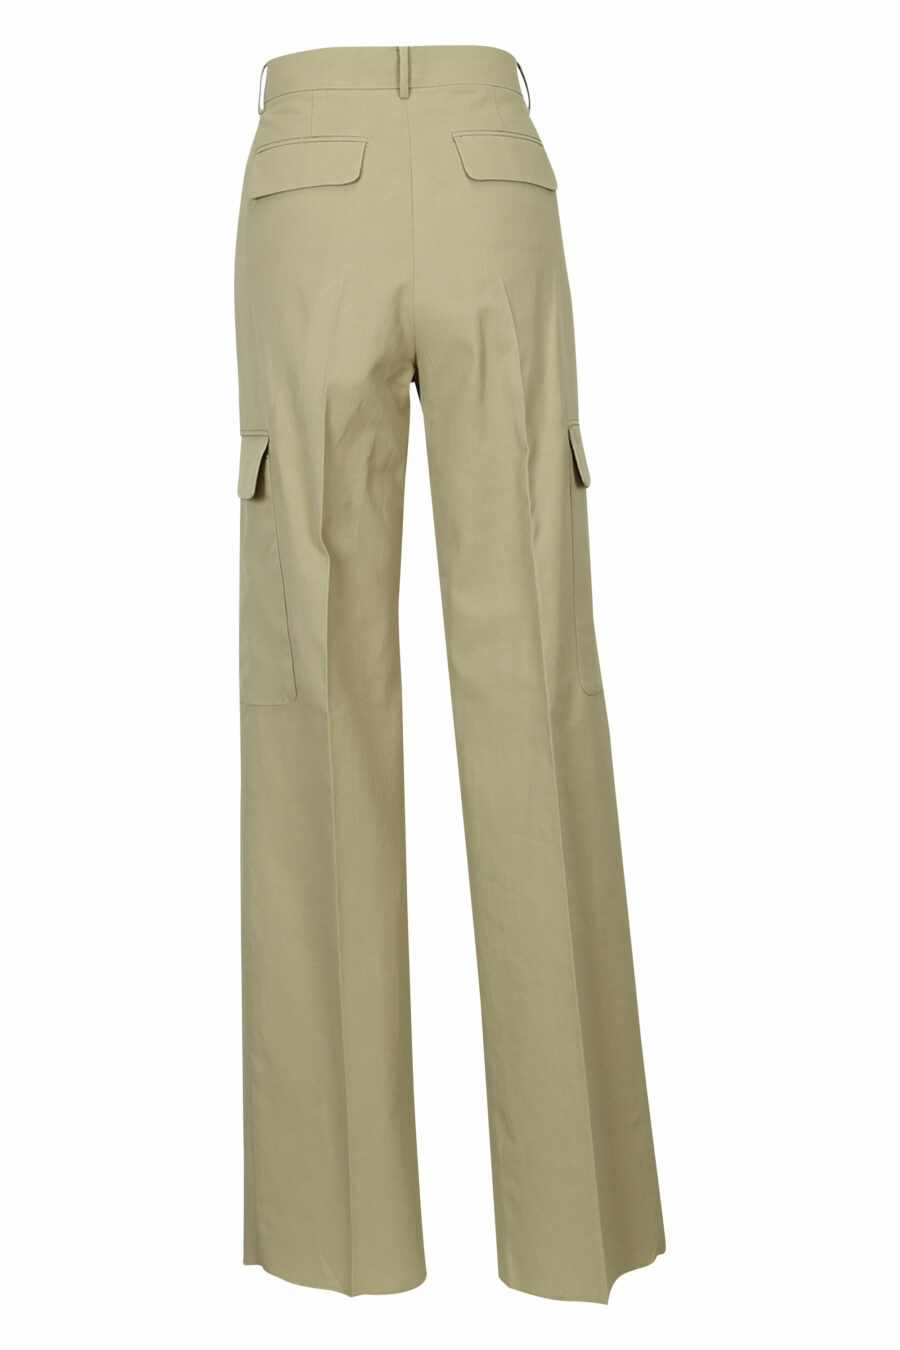 Pantalón beige estilo cargo ancho - 21310442060043 1